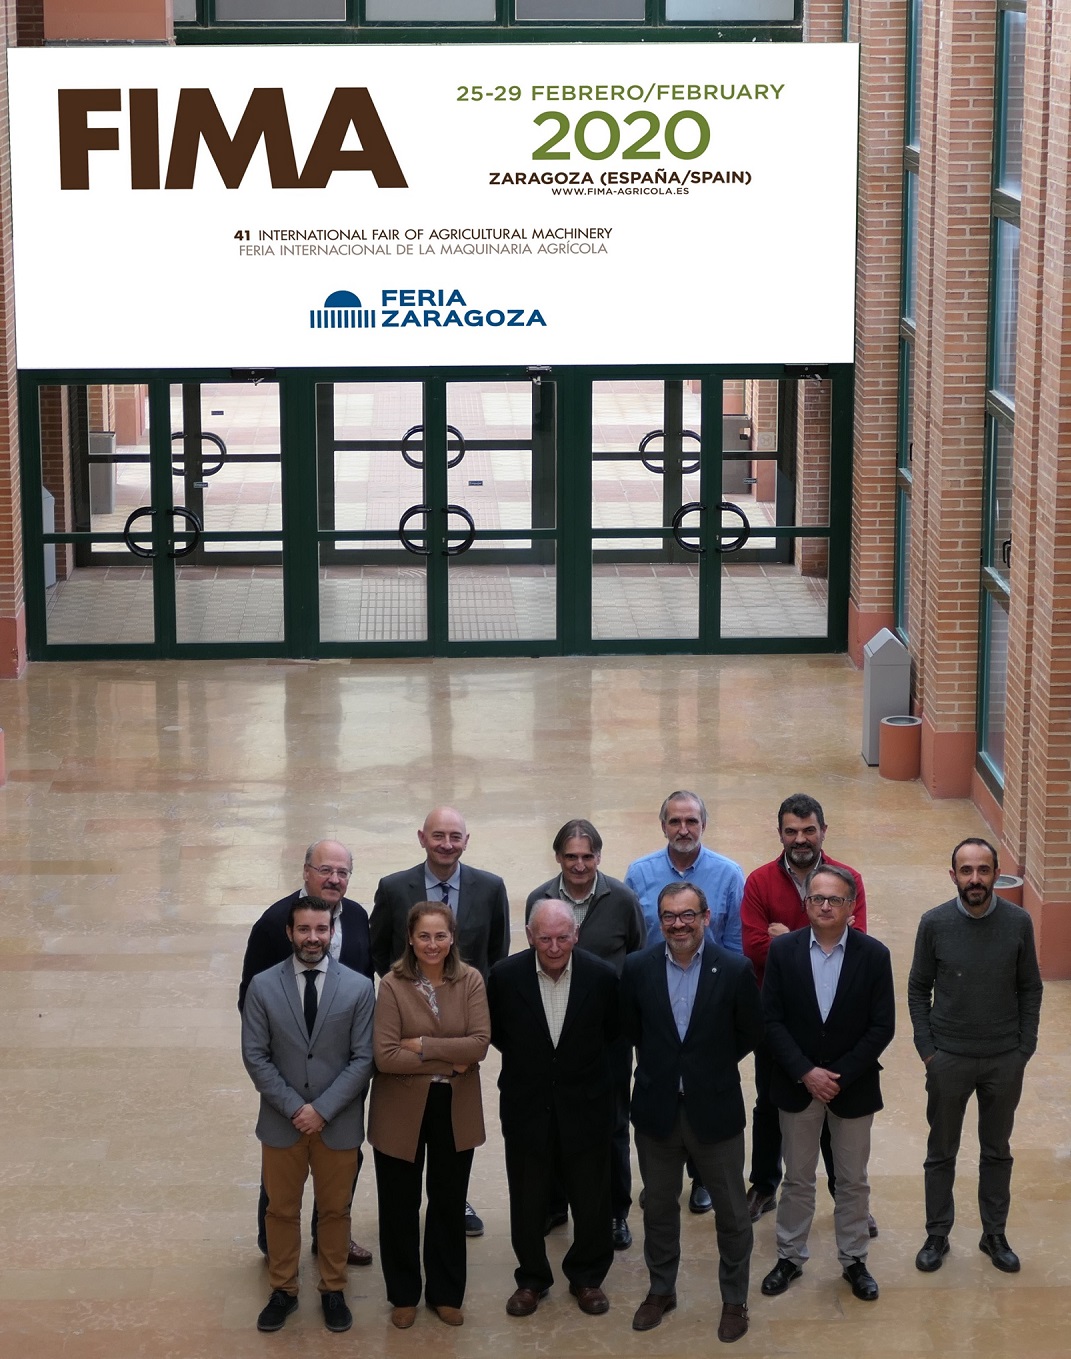 Innovación y tecnología, ejes vertebradores de FIMA 2020